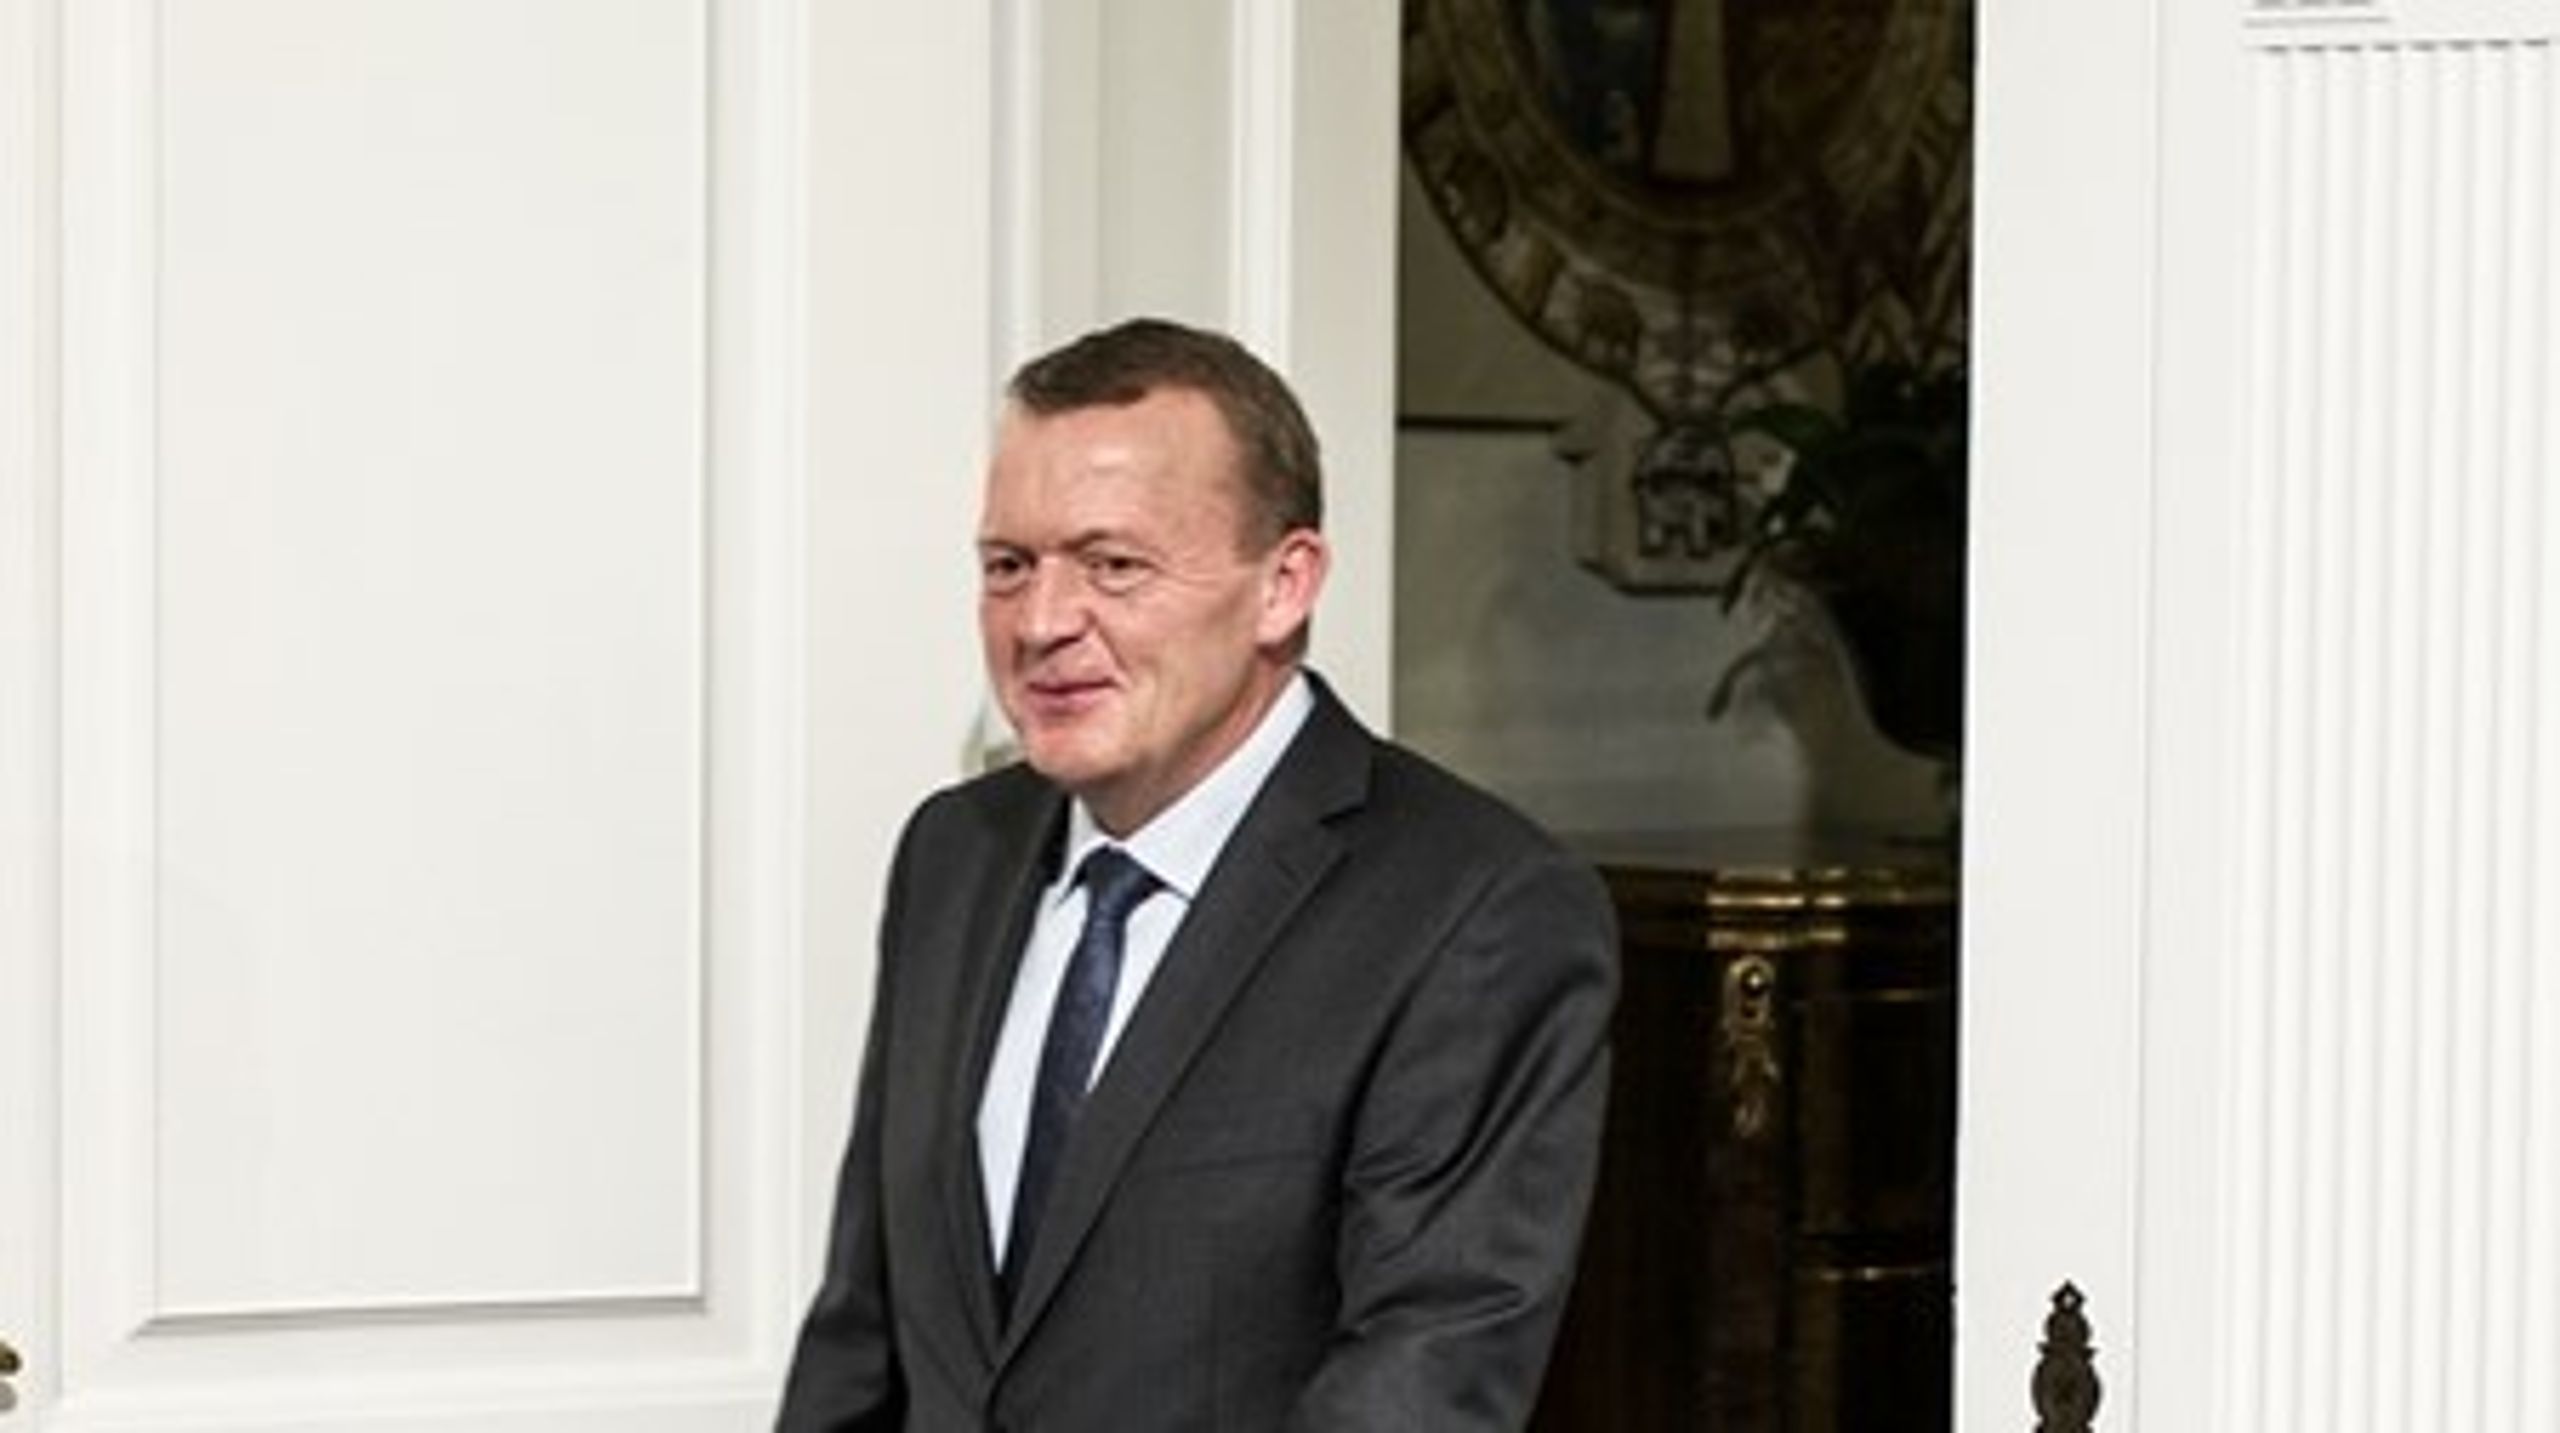 Statsminister Lars Løkke Rasmussen har ansat&nbsp;Jacob Bruun som&nbsp;ny særlig rådgiver i Statsministeriet.&nbsp;